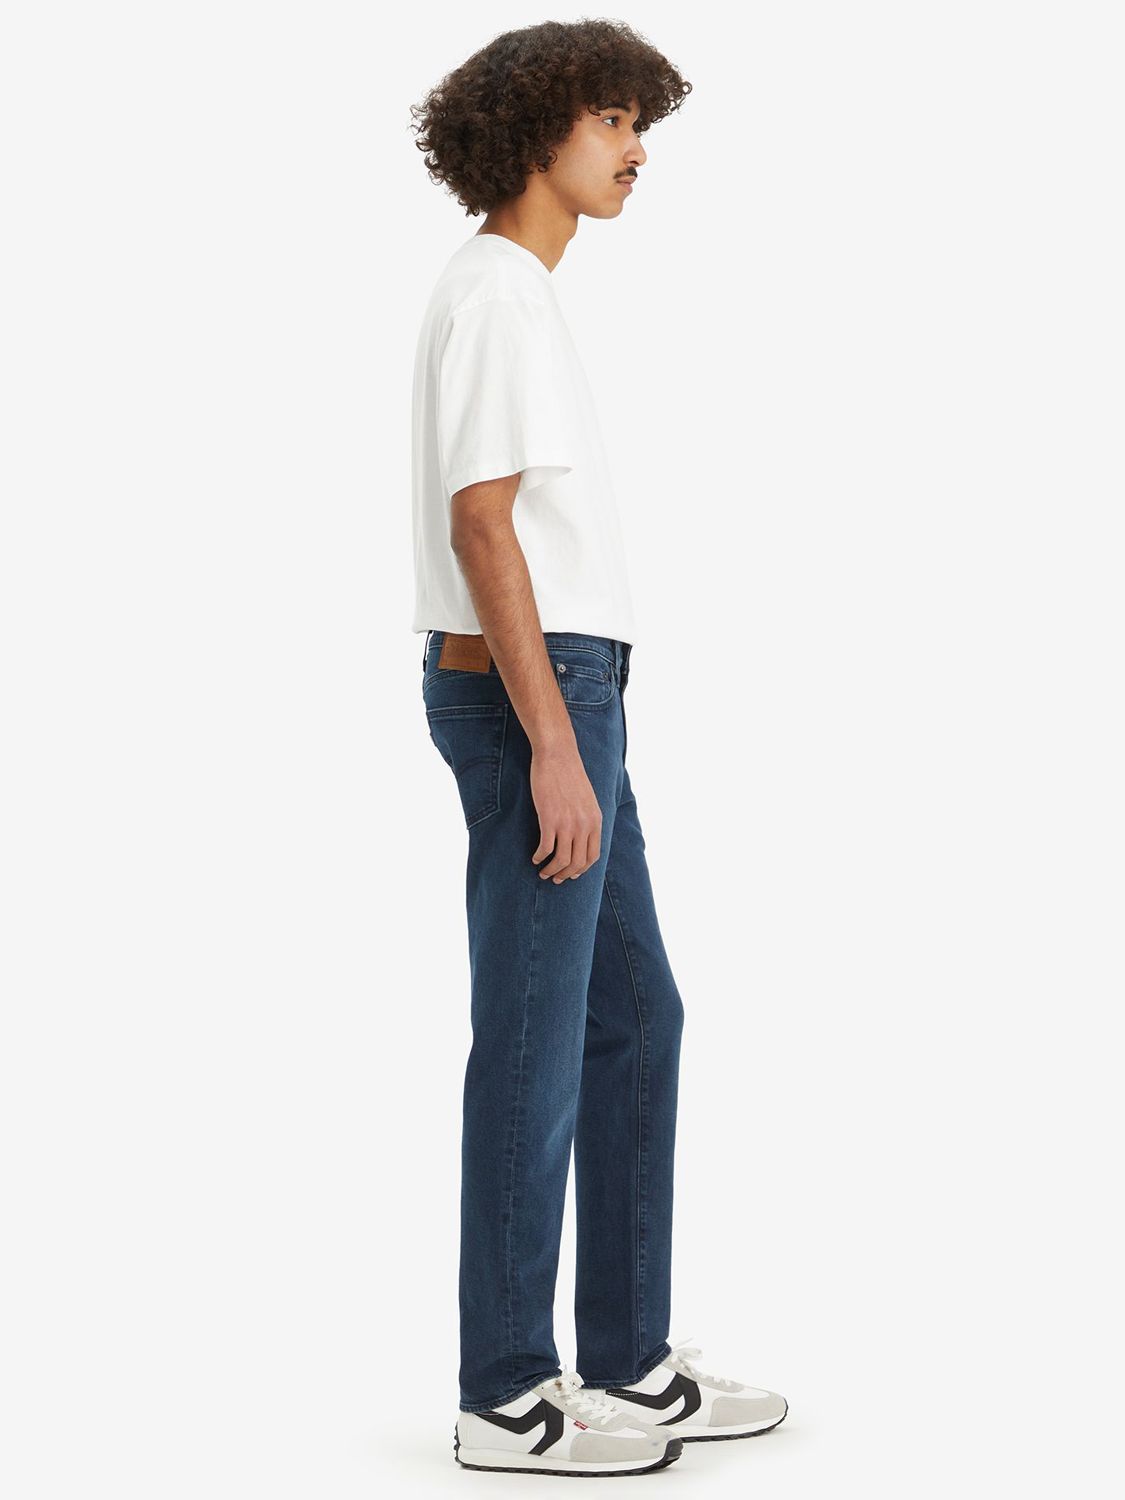 Levi's 511 Slim Advance Jeans, Blue, 30S